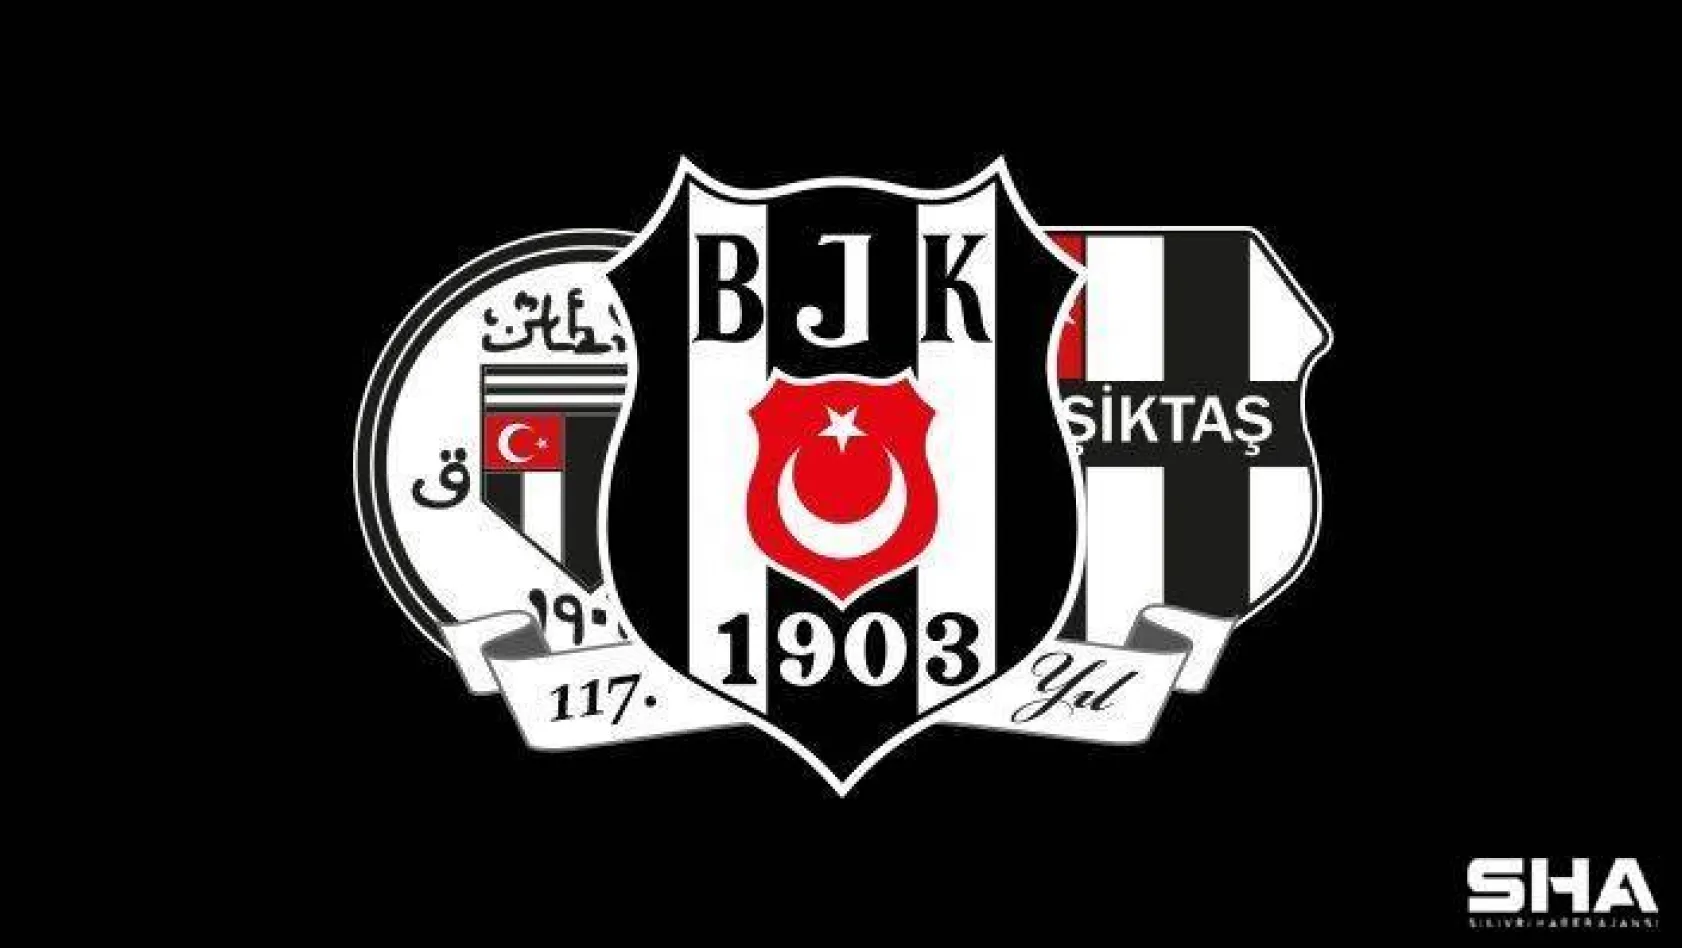 Beşiktaş Olağan Genel Kurul Toplantısı 23 Aralık'ta gerçekleşecek